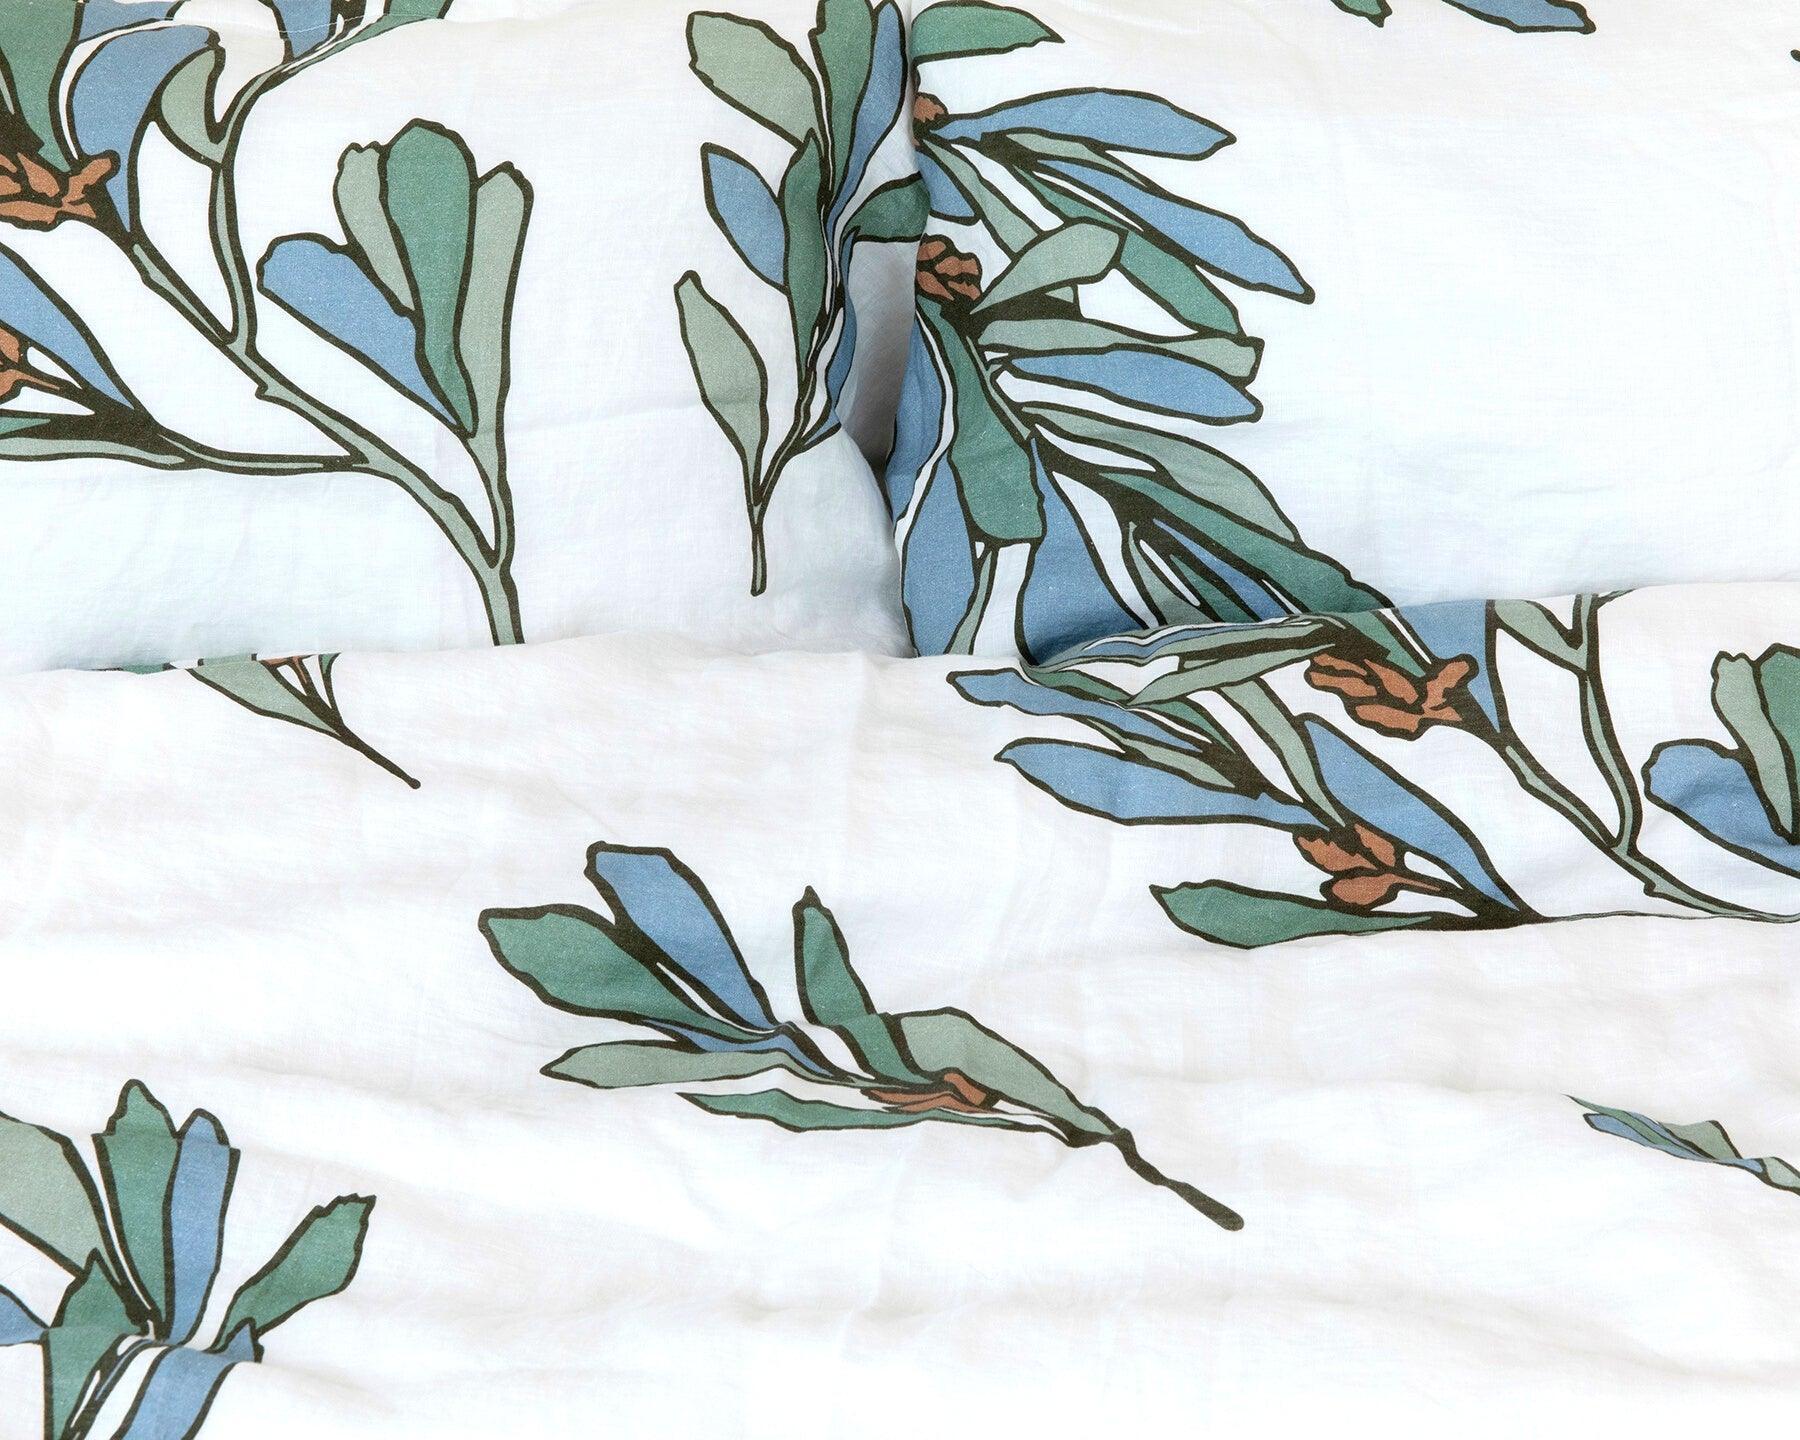 Organic European linen duvet cover set with modern Scandinavian floral design - Twin / Standard, Full/Queen / Standard, King/Cal-King / Standard, King/Cal-King / King